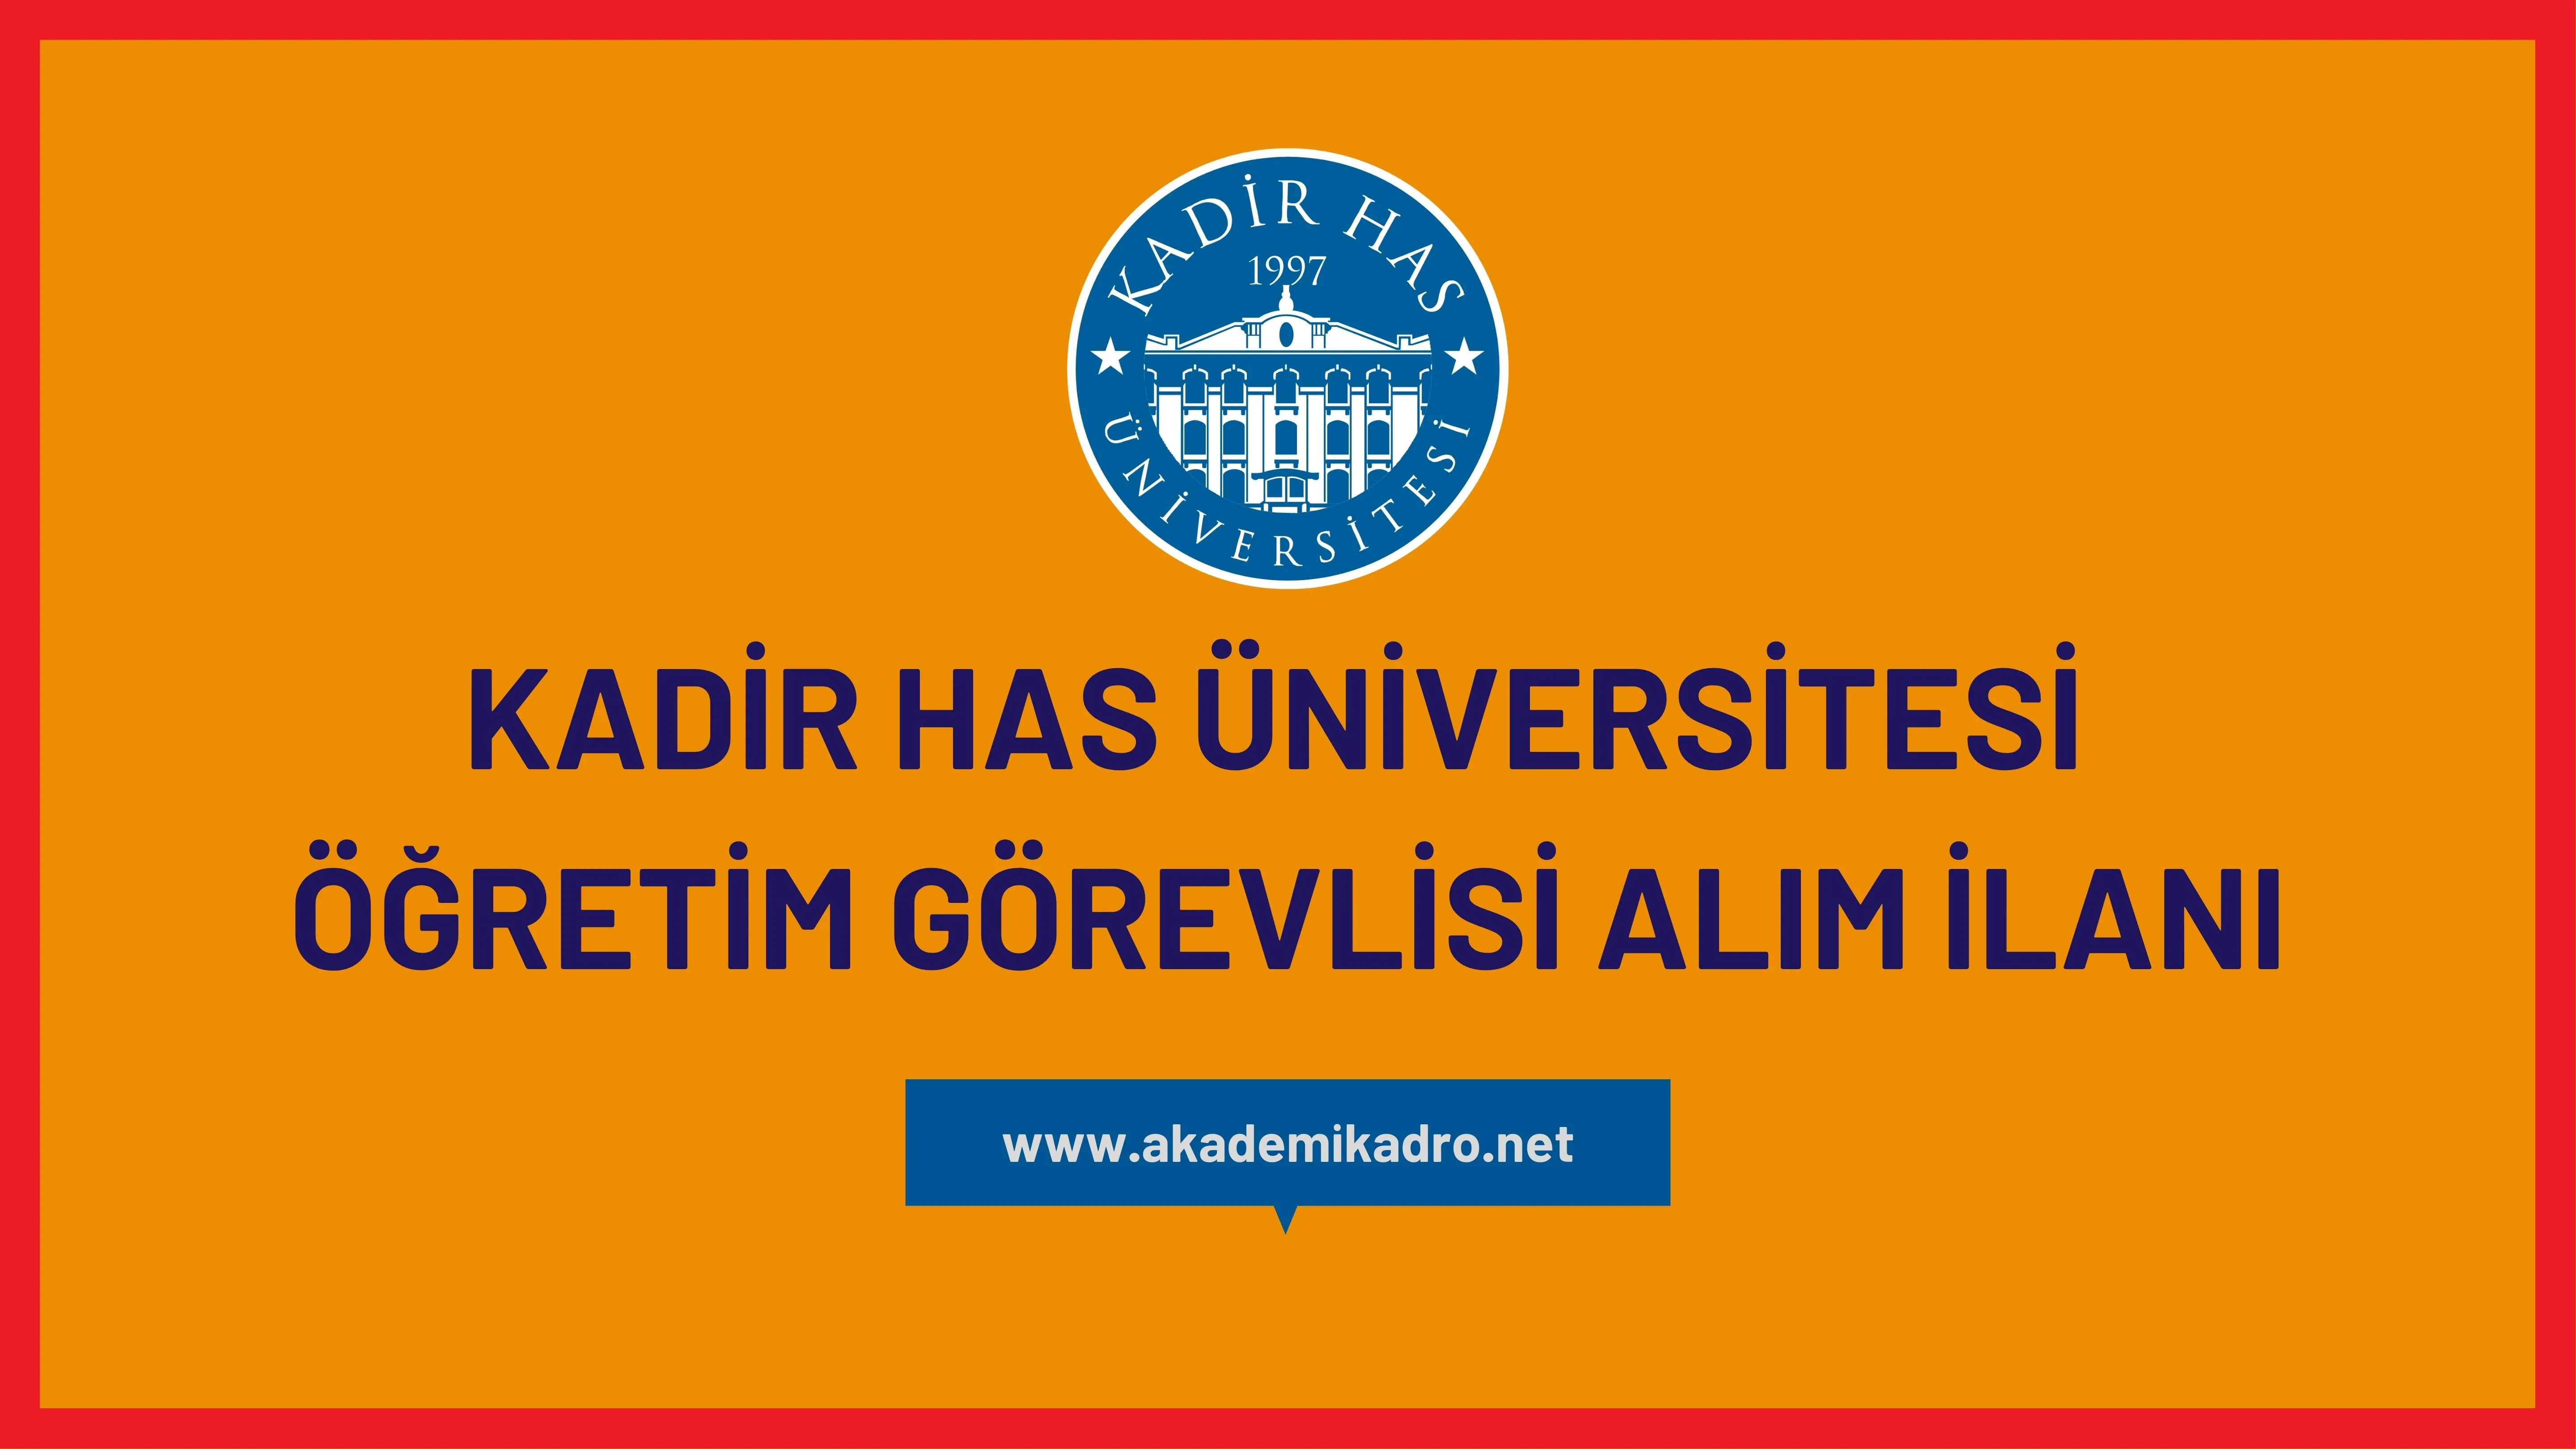 Kadir Has Üniversitesi 12 öğretim görevlisi alacaktır. Son başvuru tarihi 01 Aralık 2023